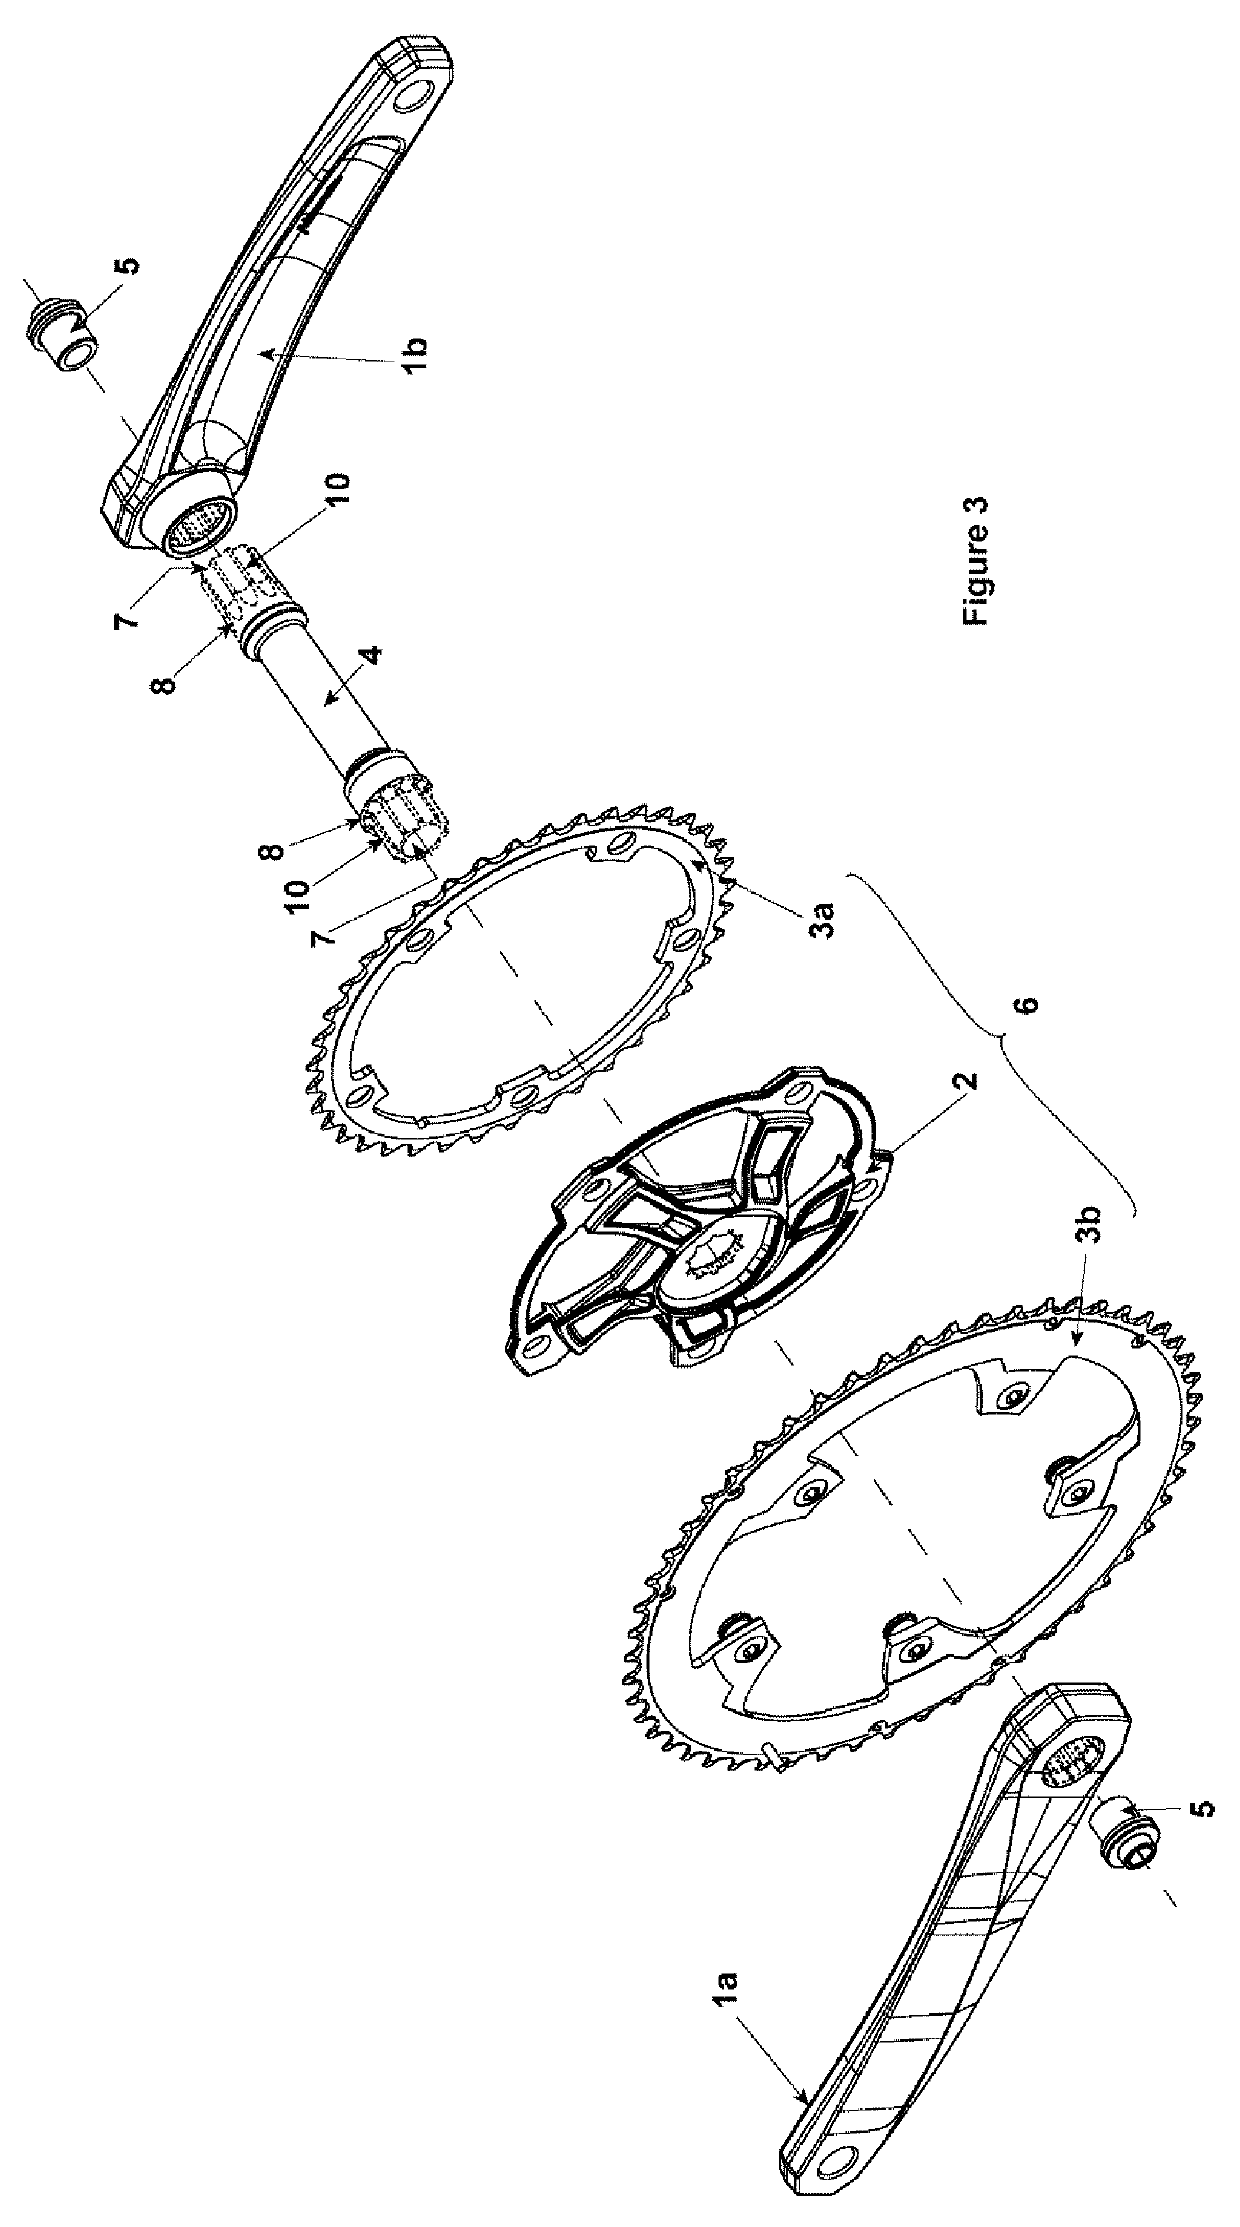 Modular crankset for bicycles